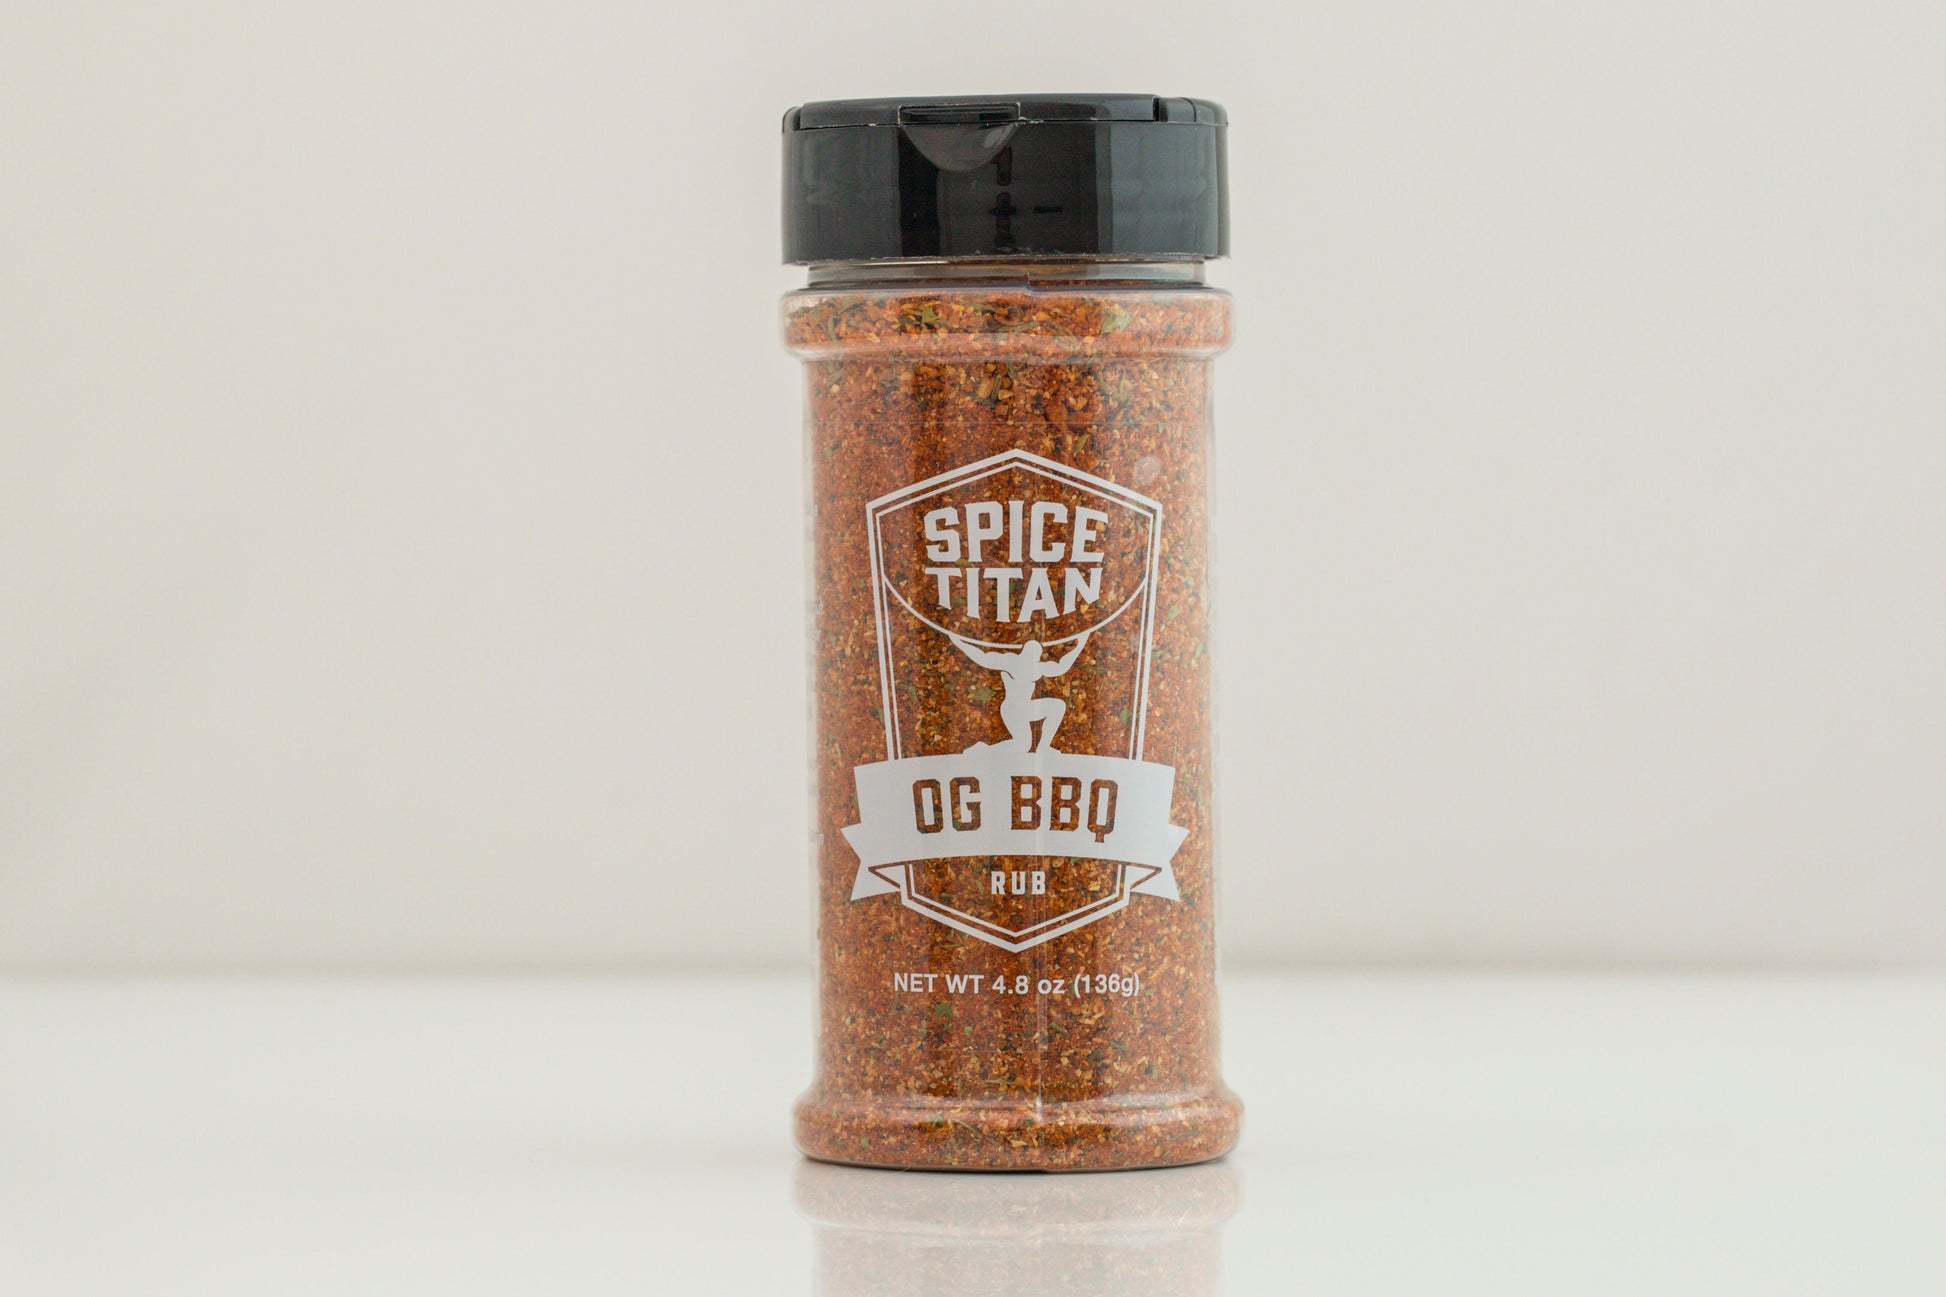 OG BBQ Spicetitan.com